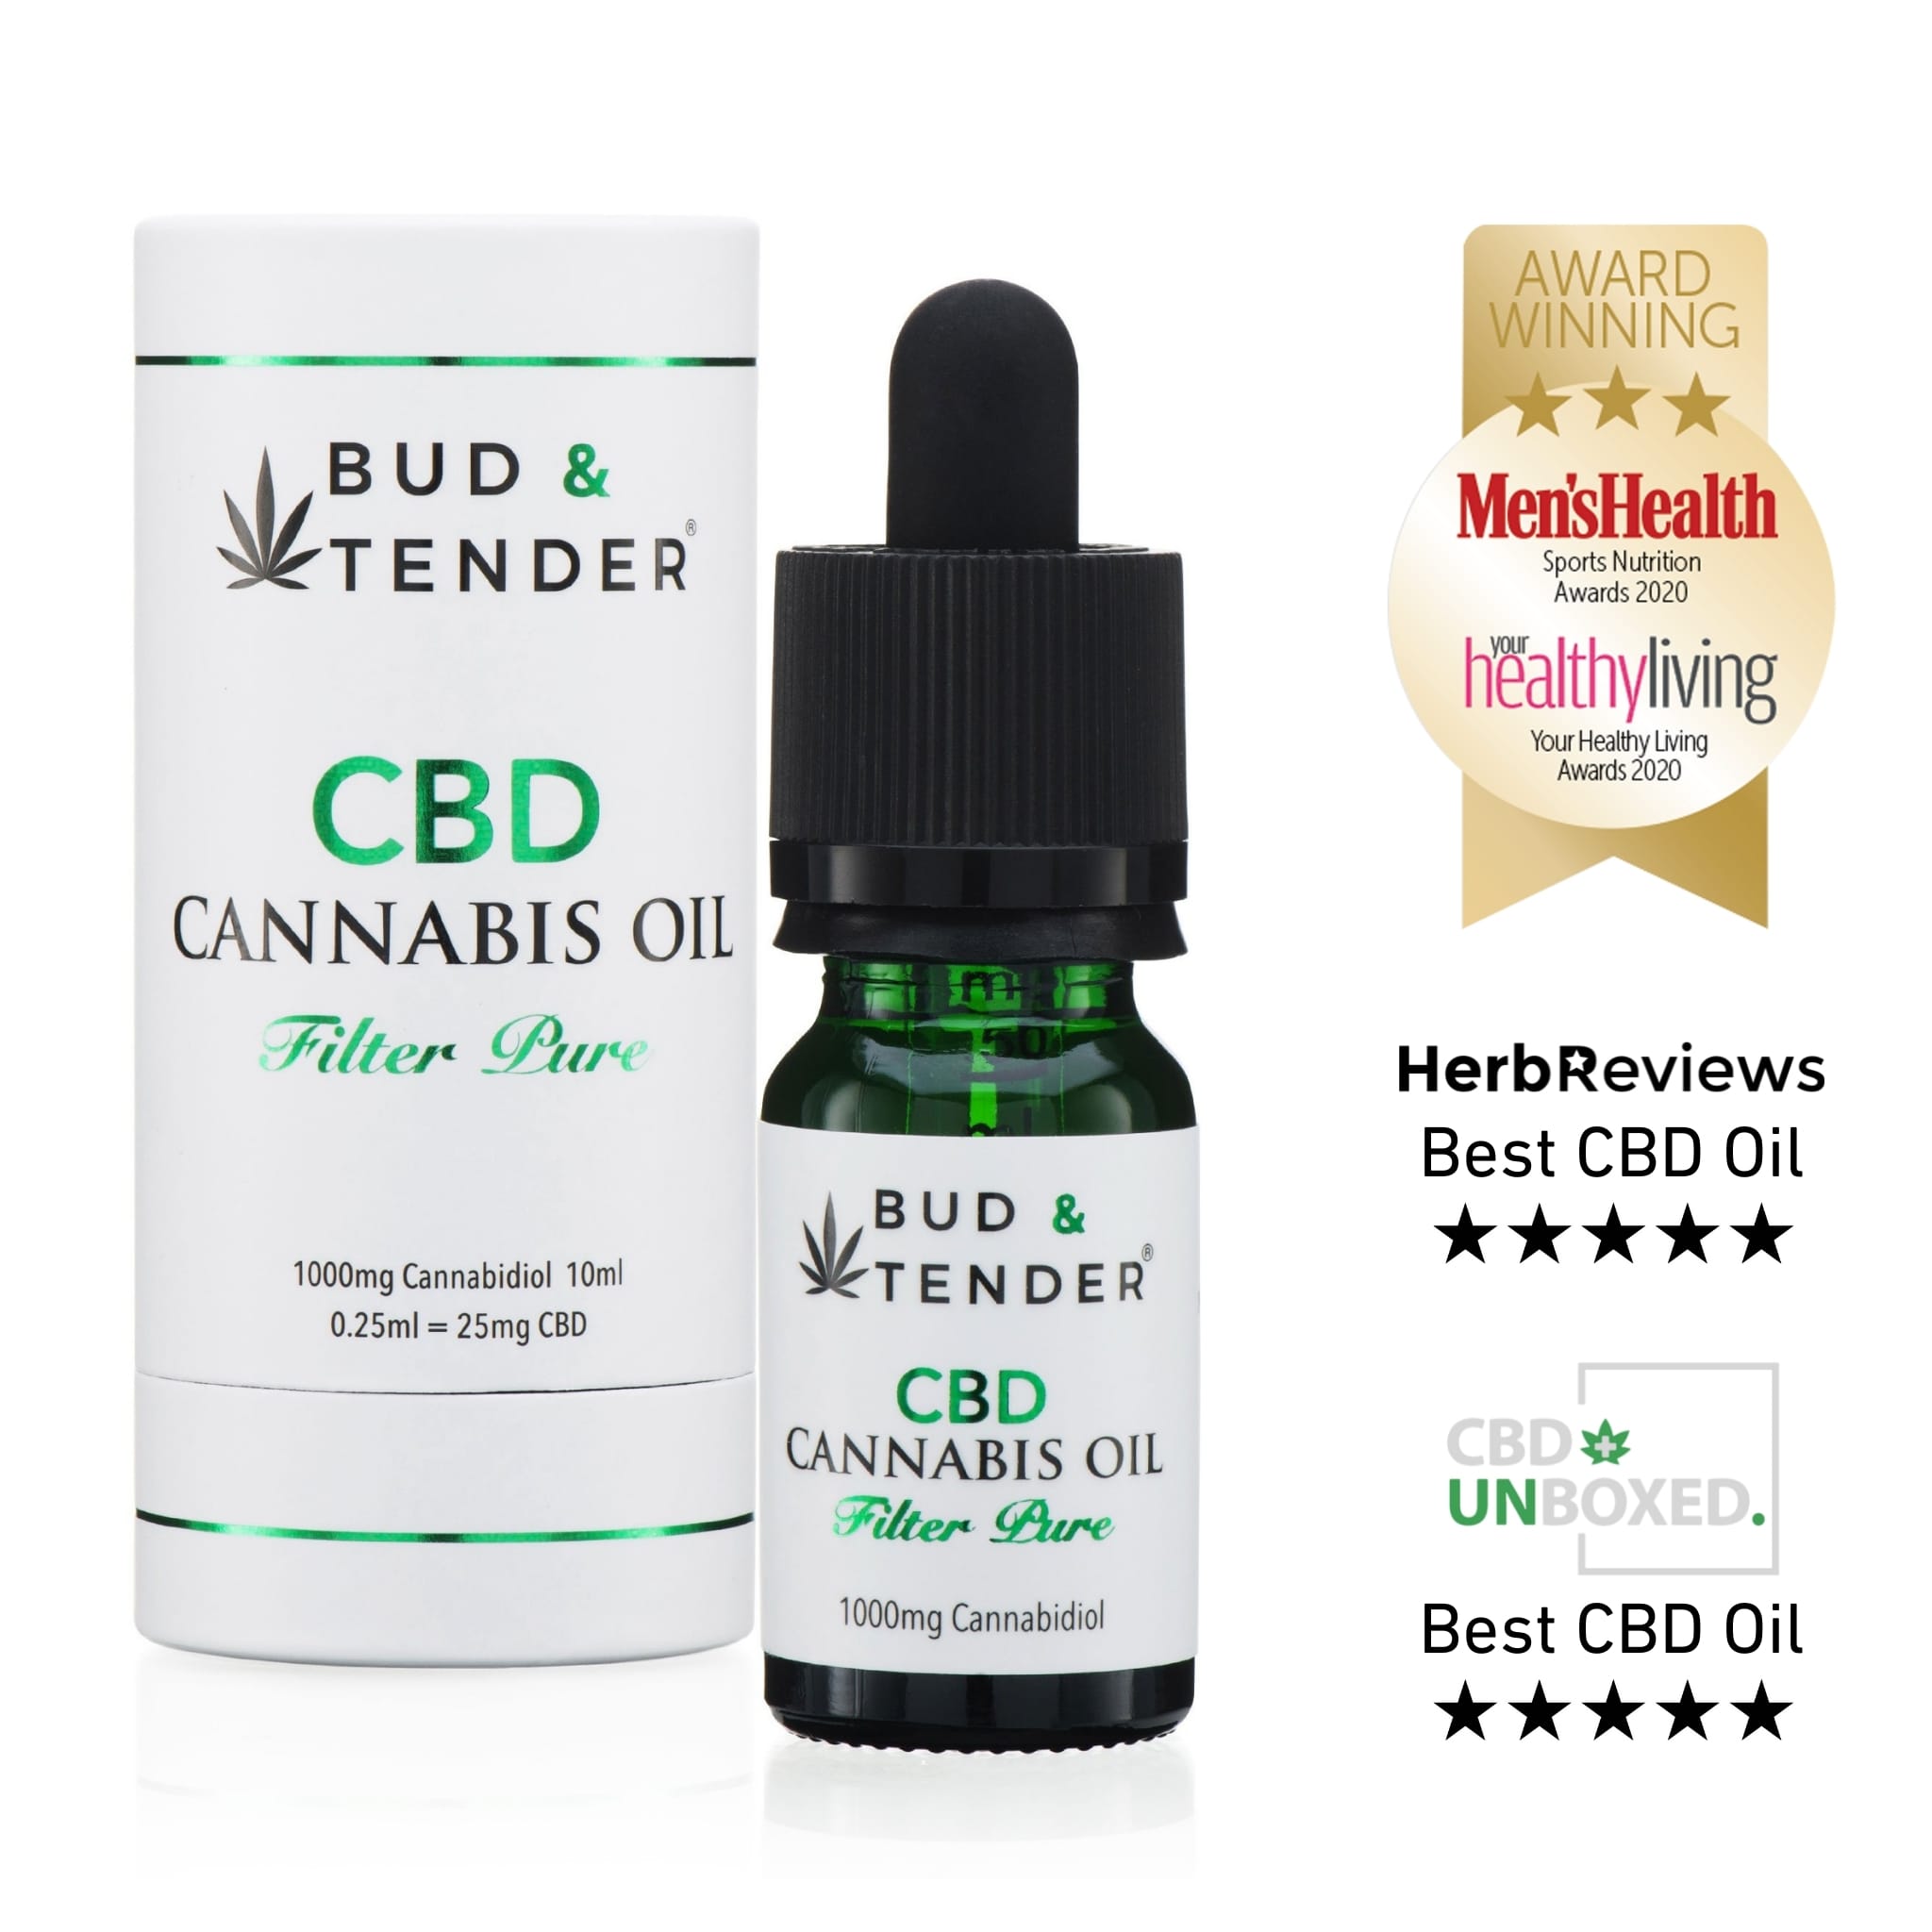 bud & tender: a bottle of CBD oil